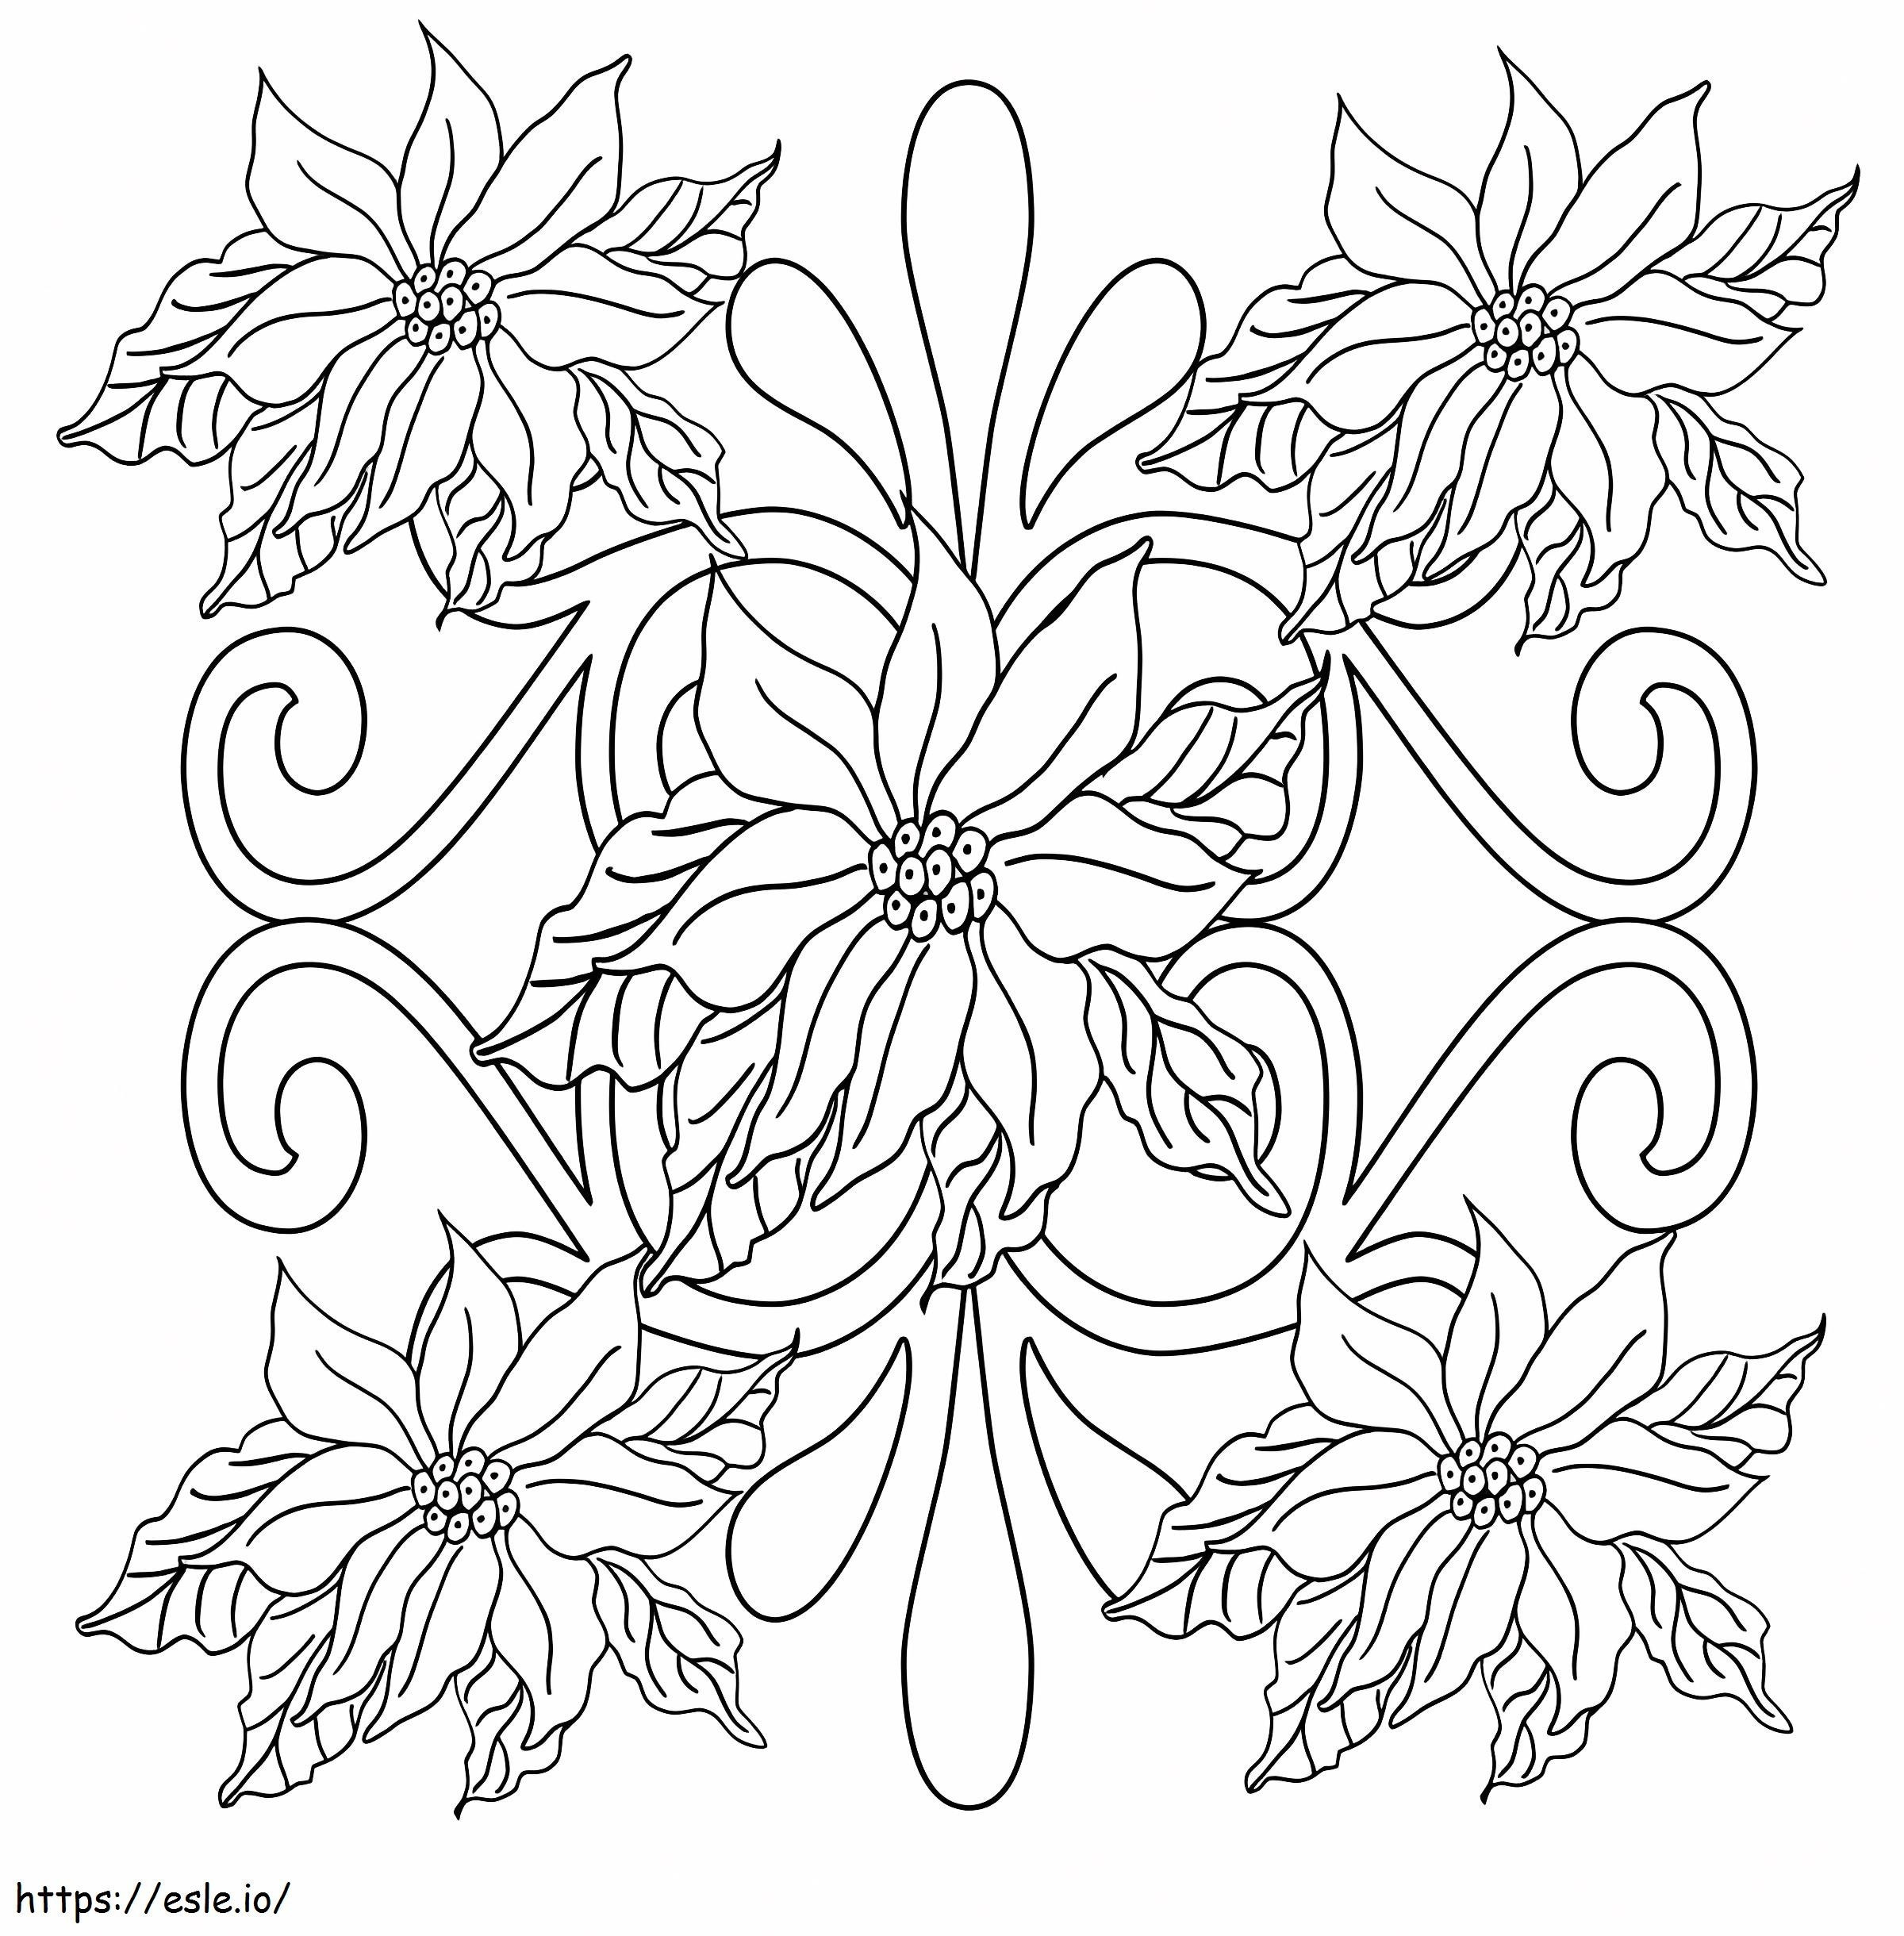 Coloriage Poinsettia Pour Adulte à imprimer dessin